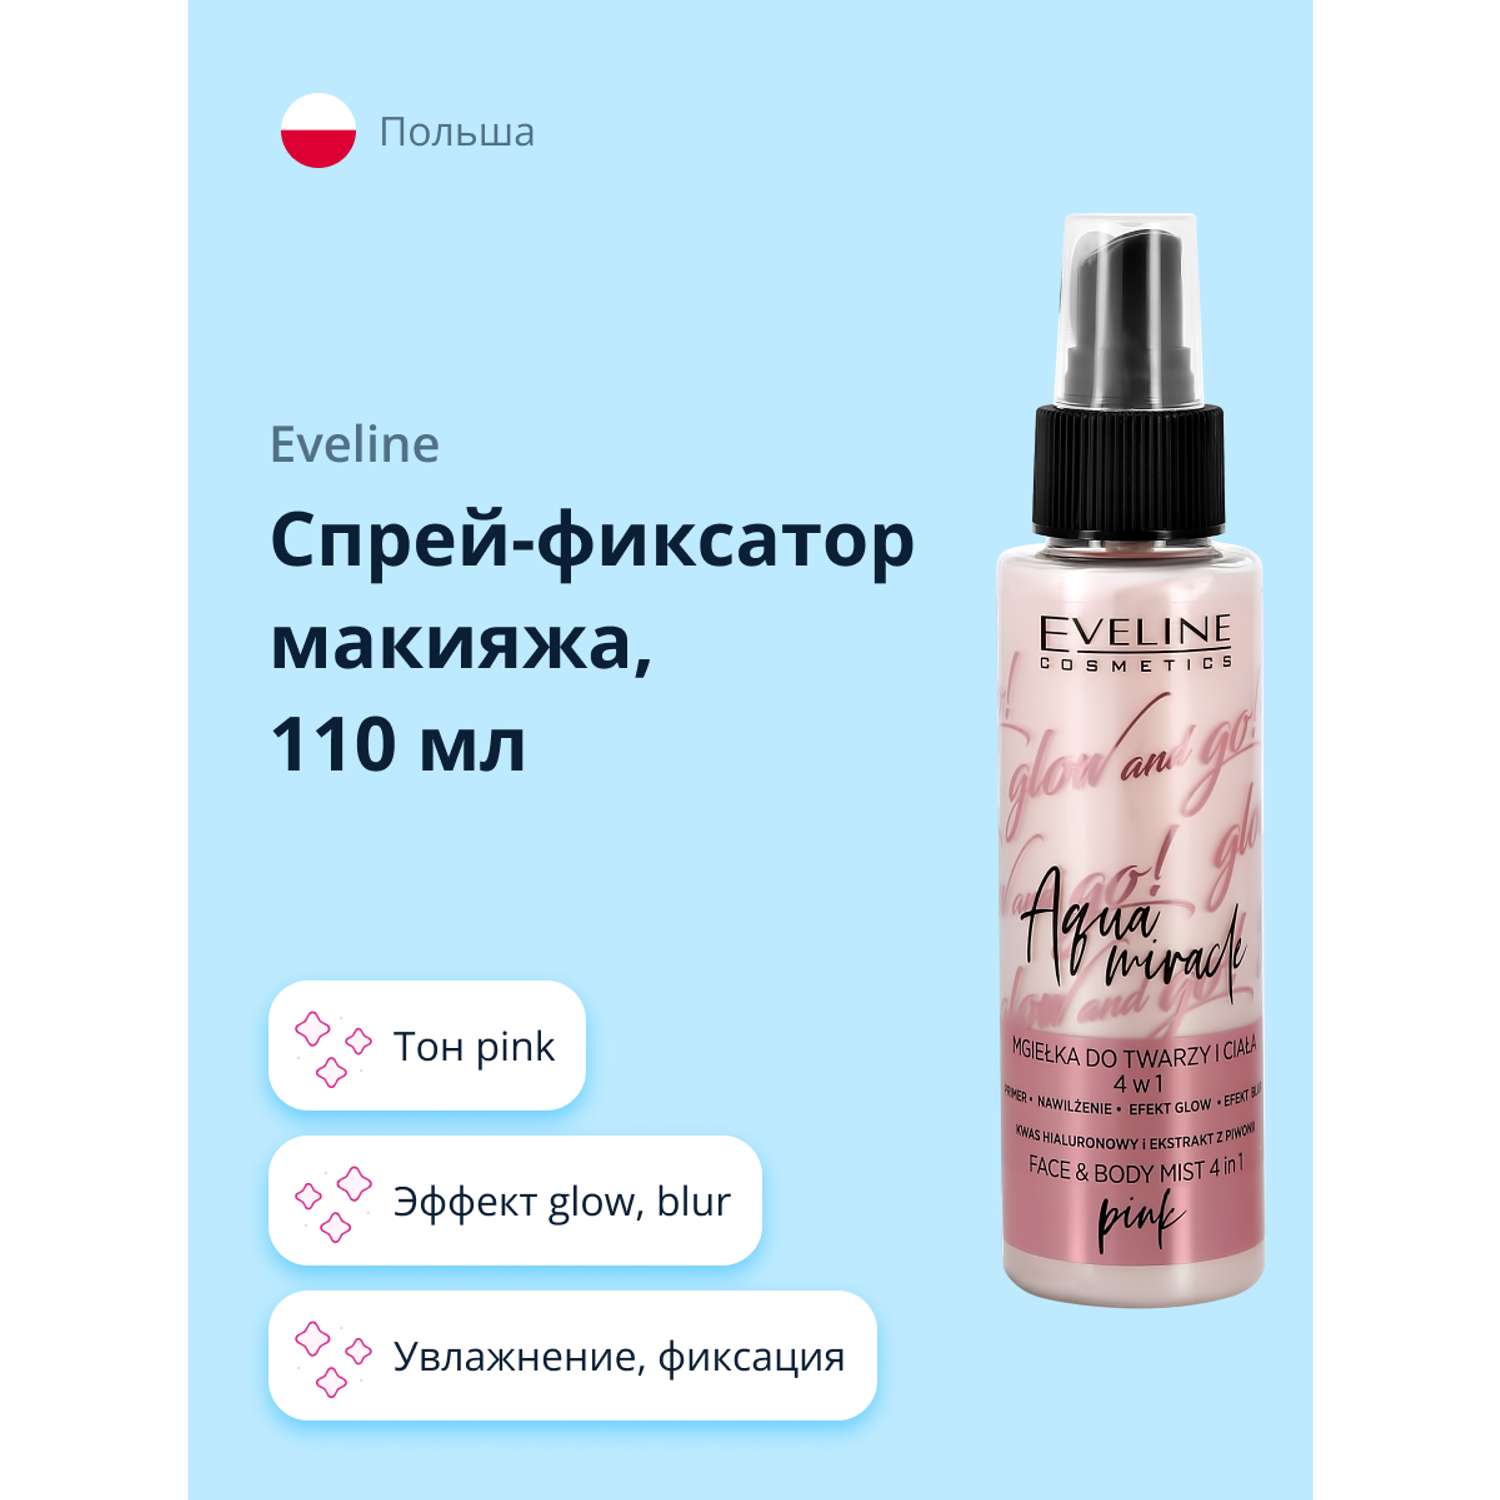 Спрей-фиксатор макияжа EVELINE Glow and go aqua miracle 4 в 1 pink 110 мл - фото 1